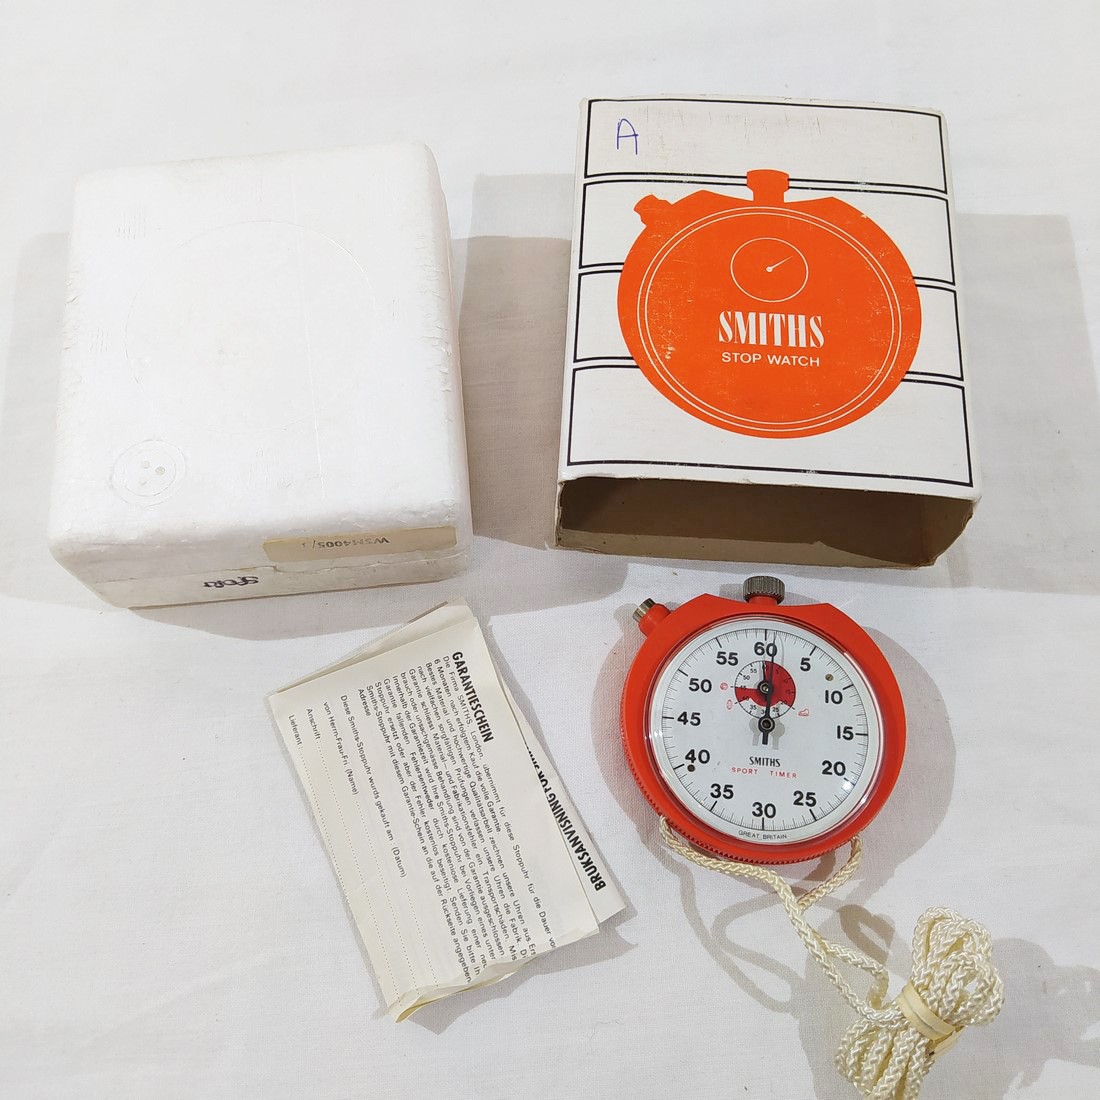 Smiths Stop Watch cronometro professionale sportivo in plastica arancio  nuovo